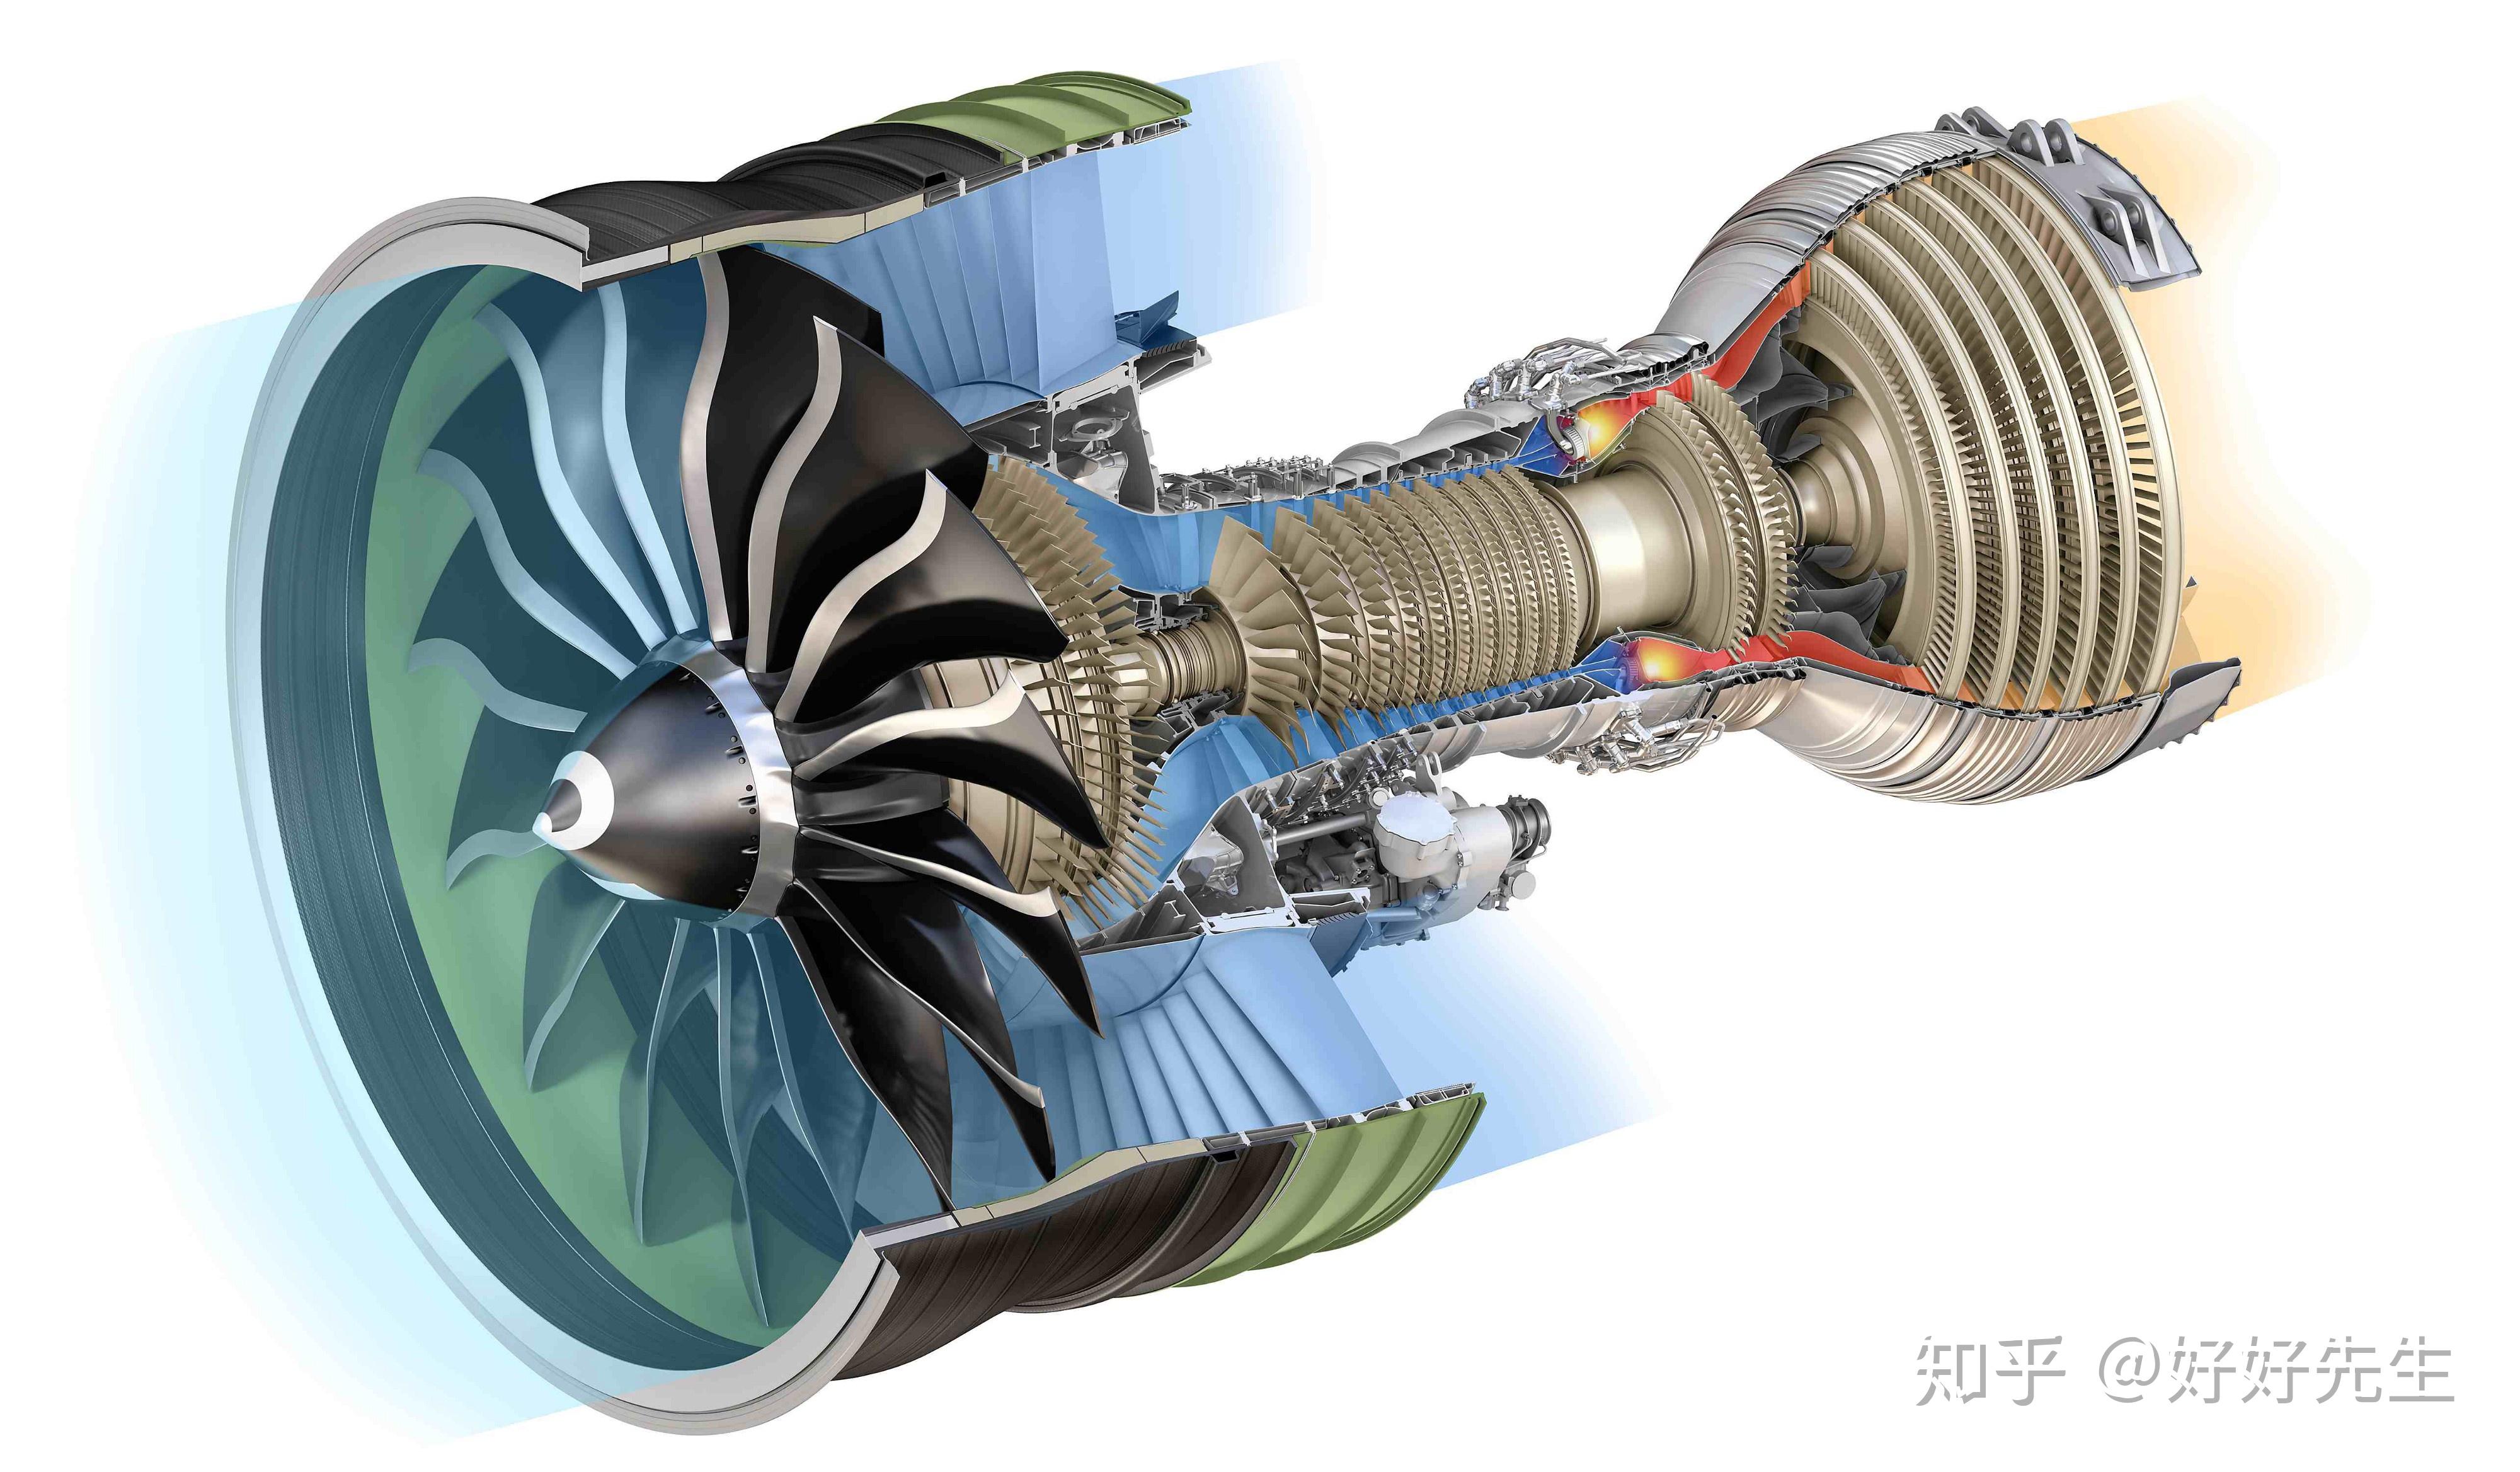 飞机涡轮风扇发动机最大的优点是什么？ - 知乎